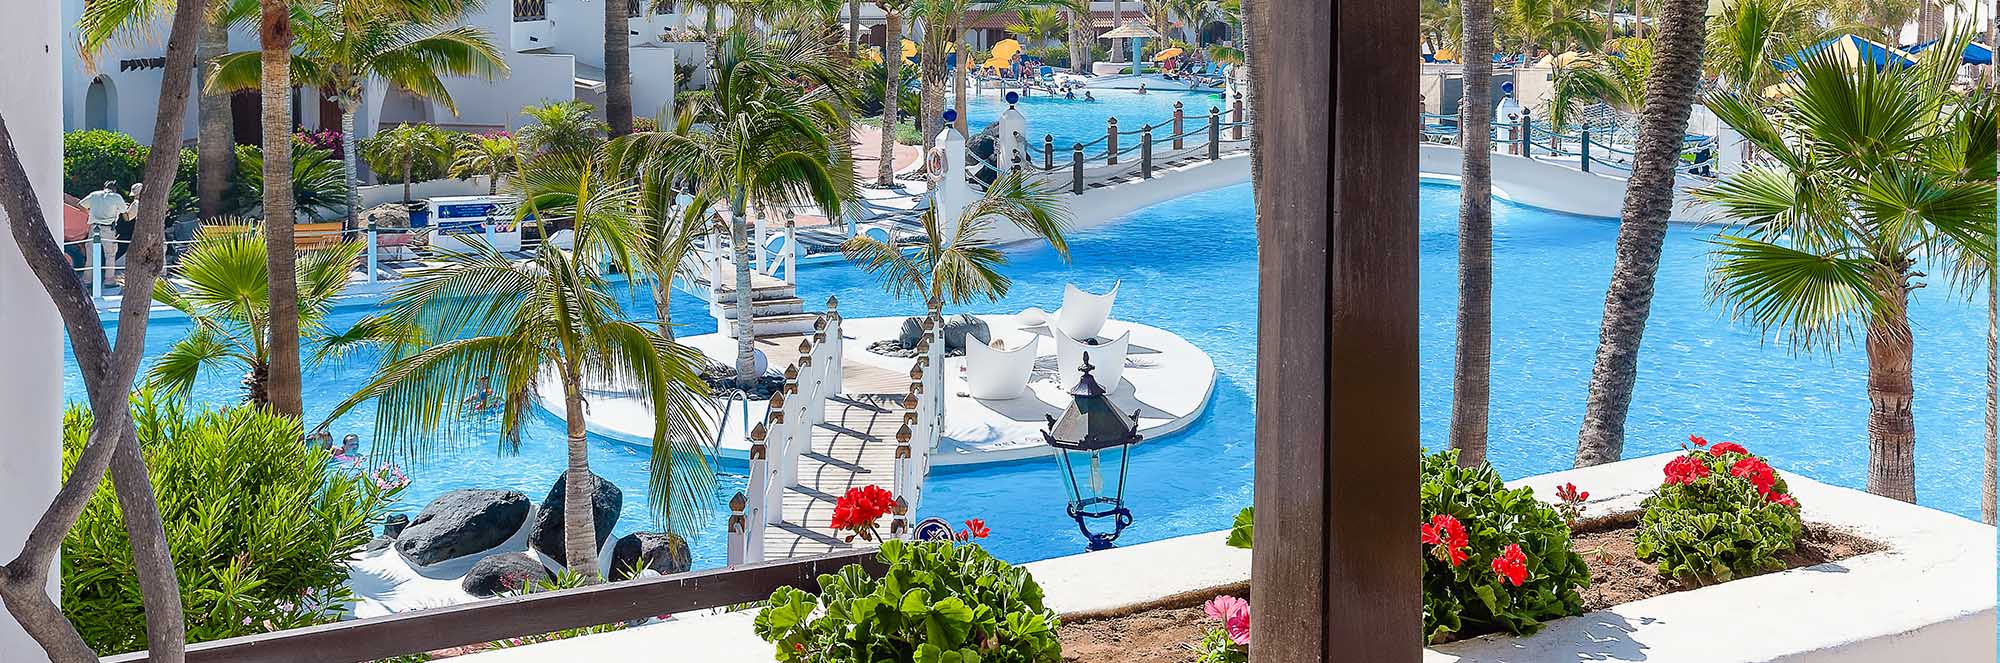 sm-parque-santiago-3-villas-slider-pool-terrace